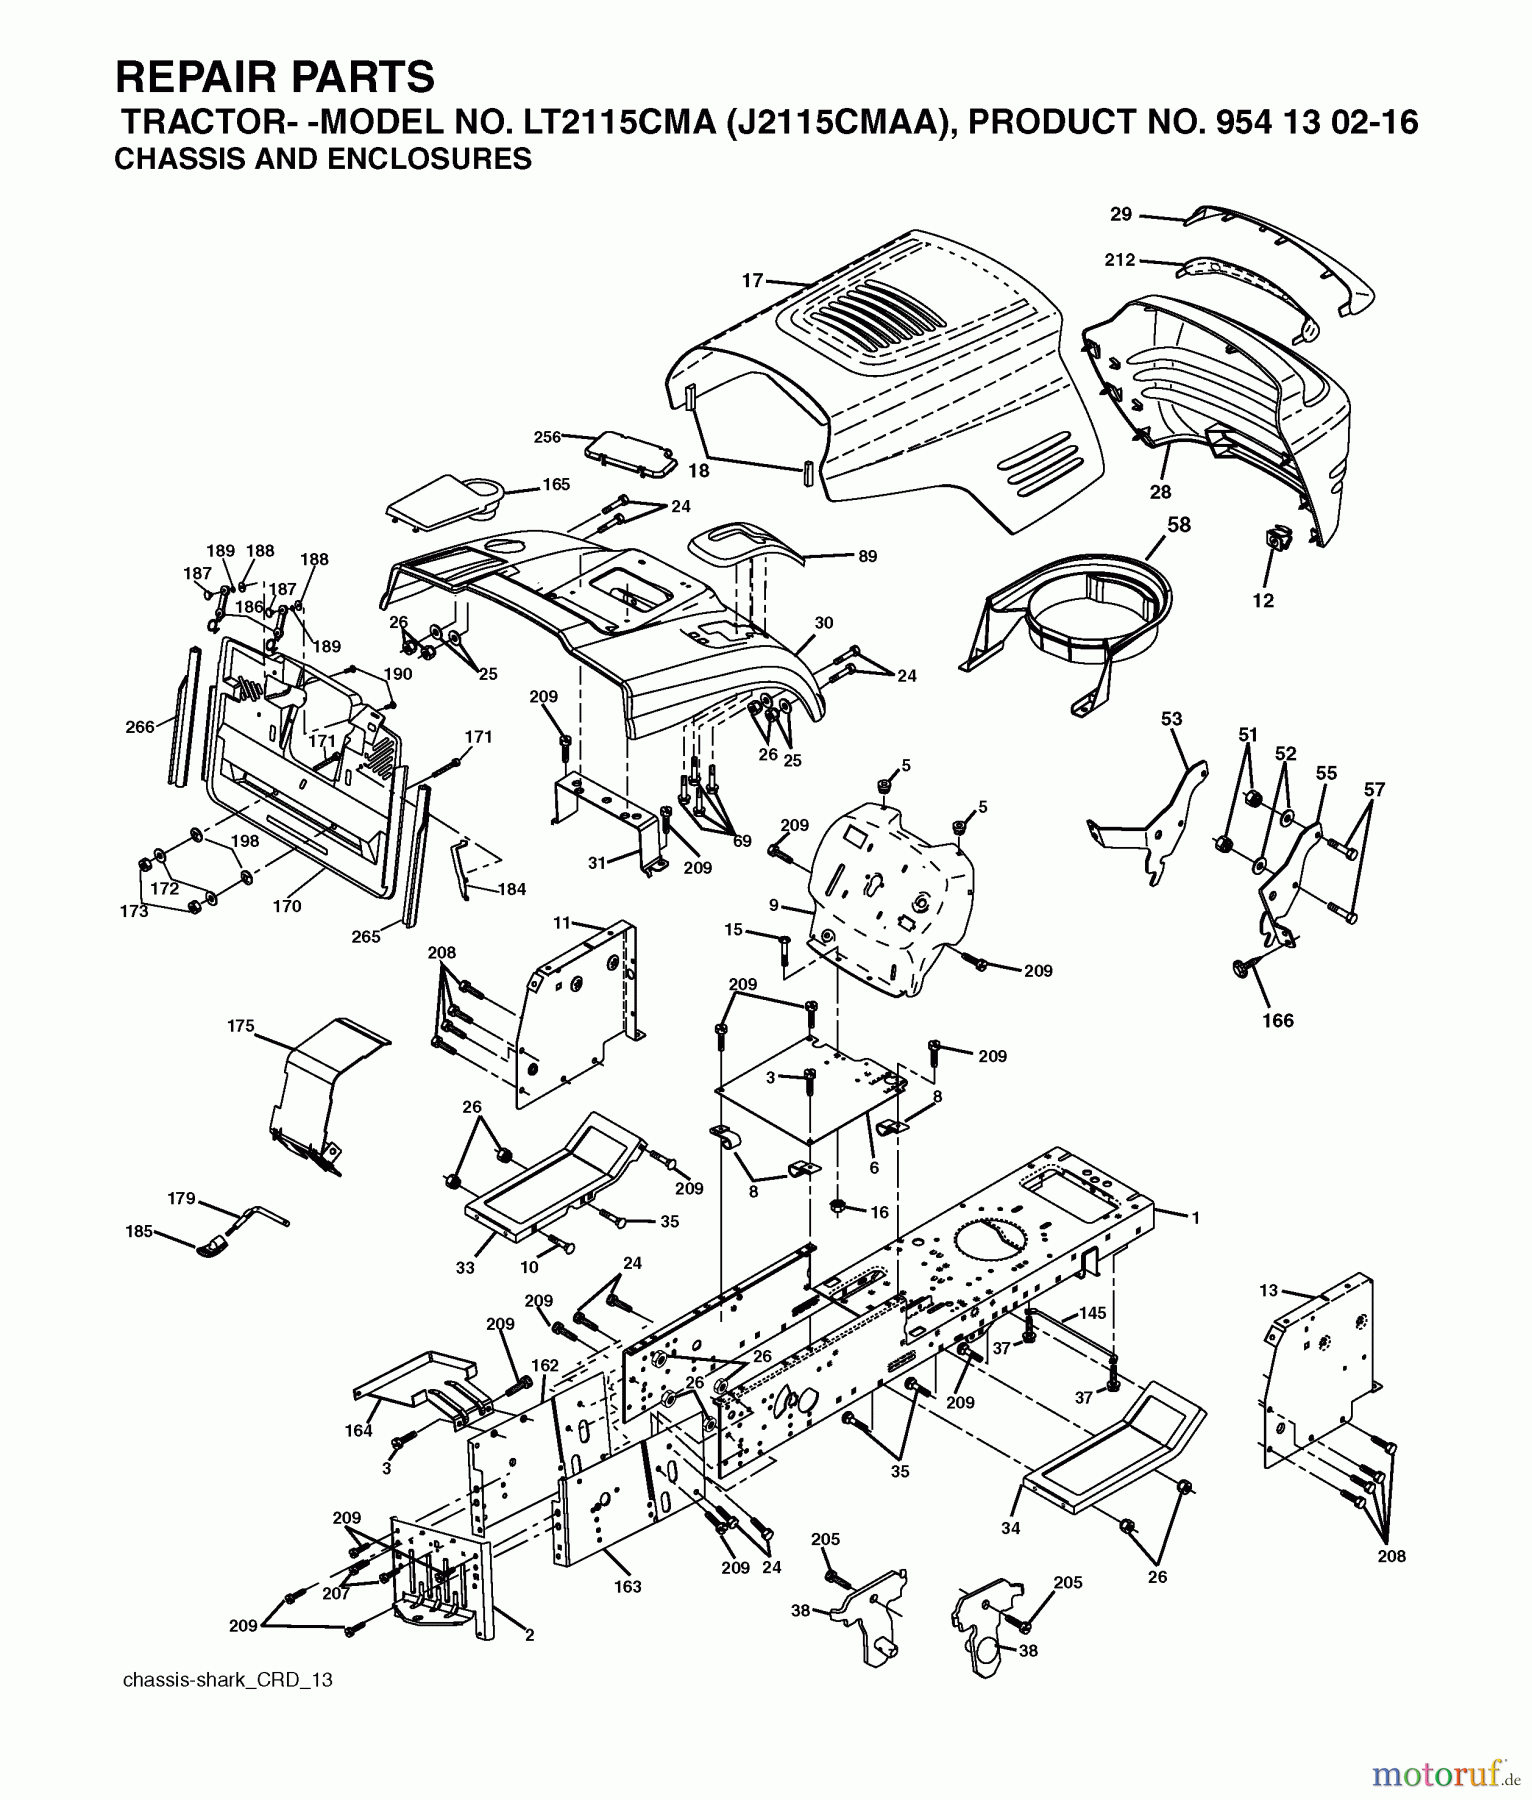  Jonsered Rasen  und Garten Traktoren LT2115 CMA (J2115CMAA, 954130216) - Jonsered Lawn & Garden Tractor (2004-01) CHASSIS ENCLOSURES